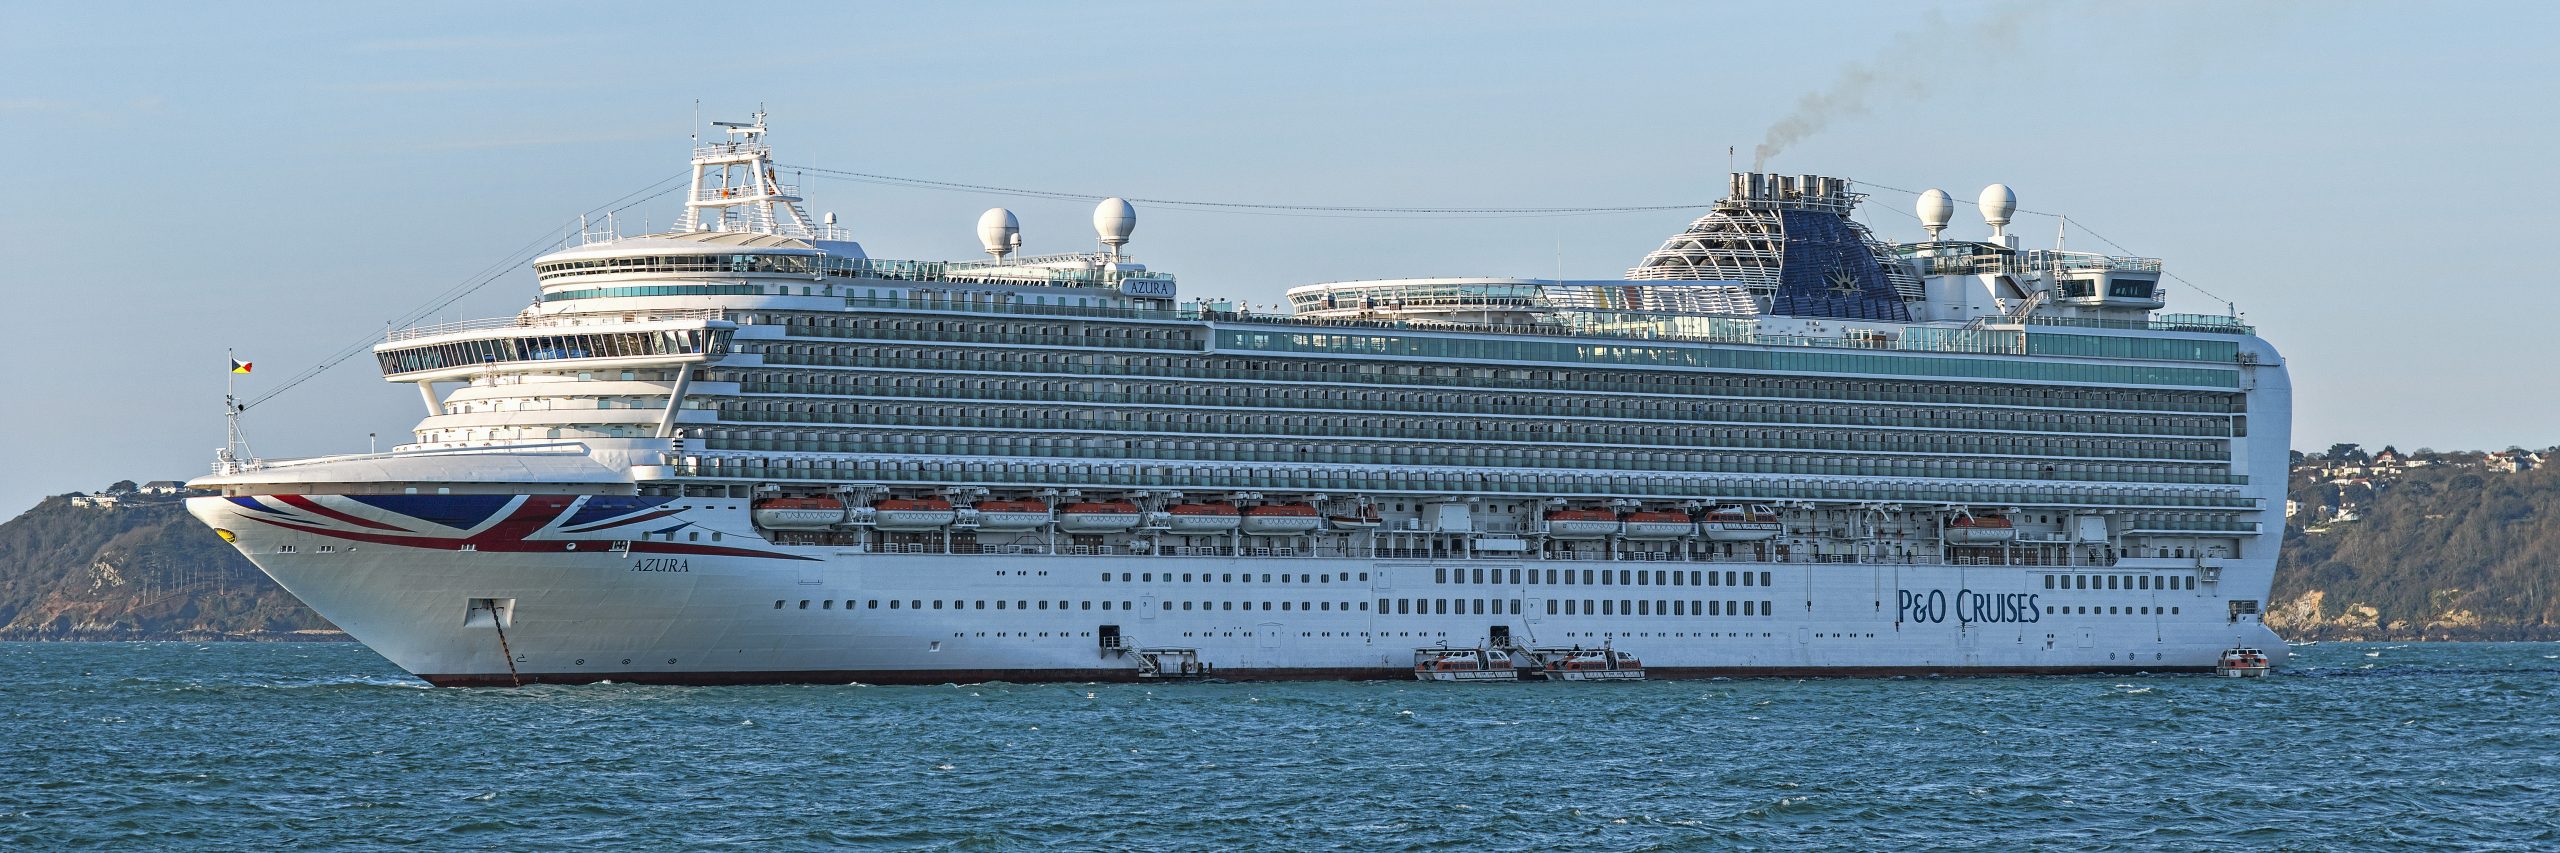 britannia cruise ship where is it now